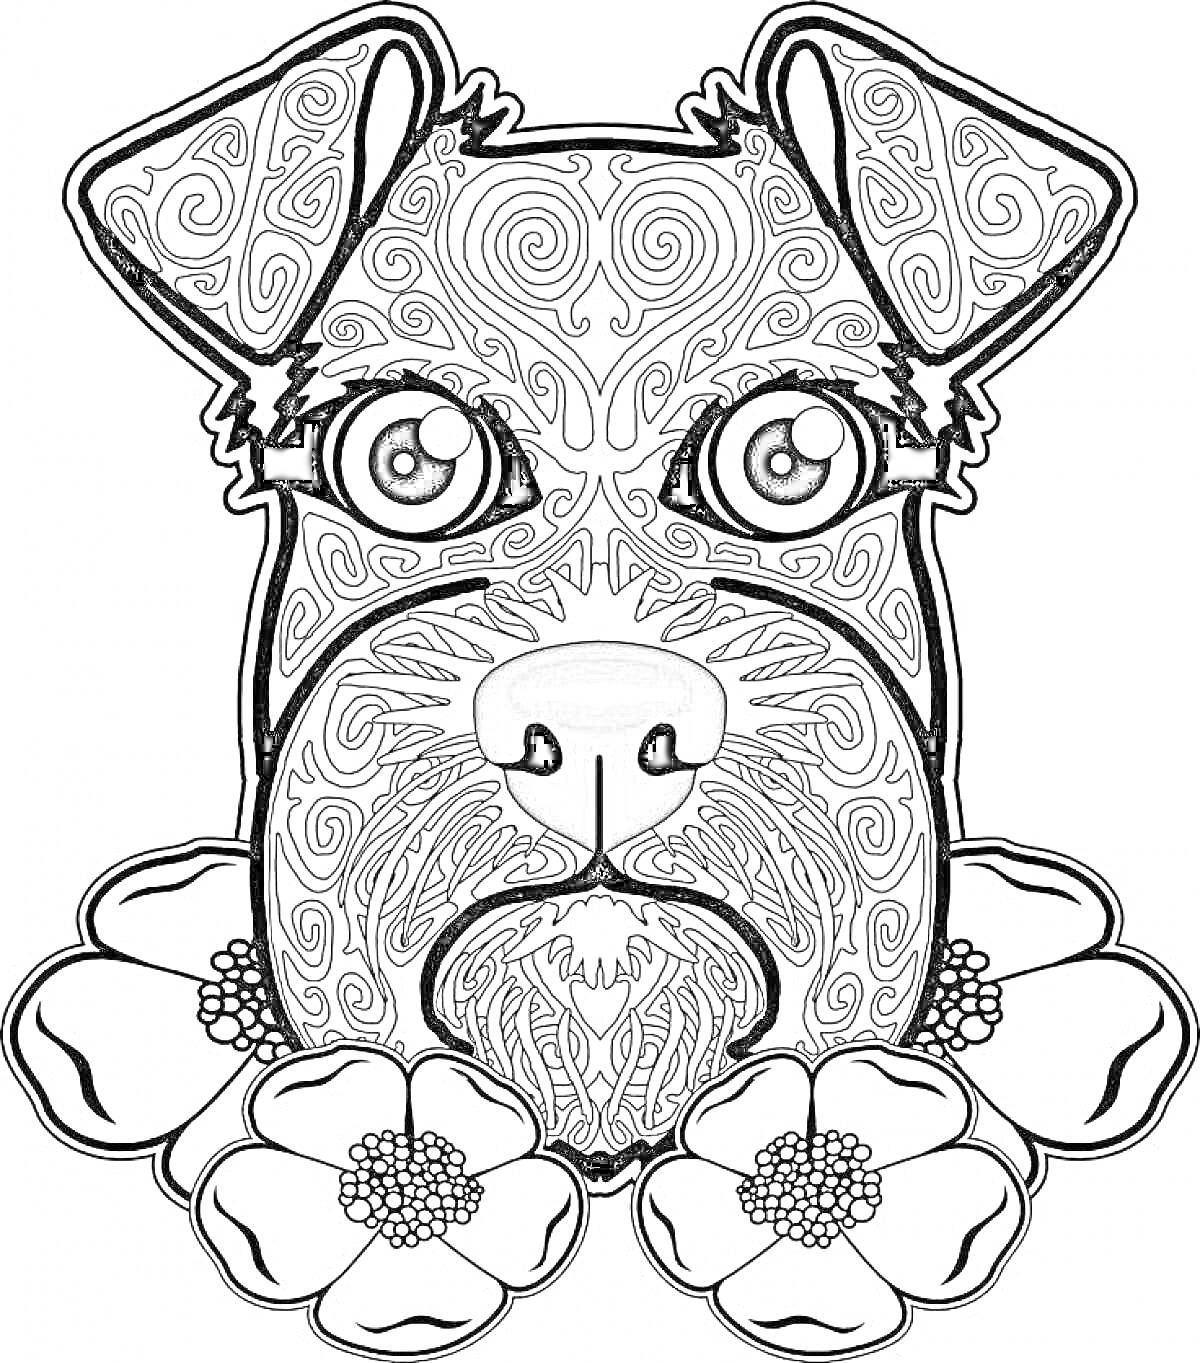 Раскраска Антистресс раскраска собаки с цветами и узорами